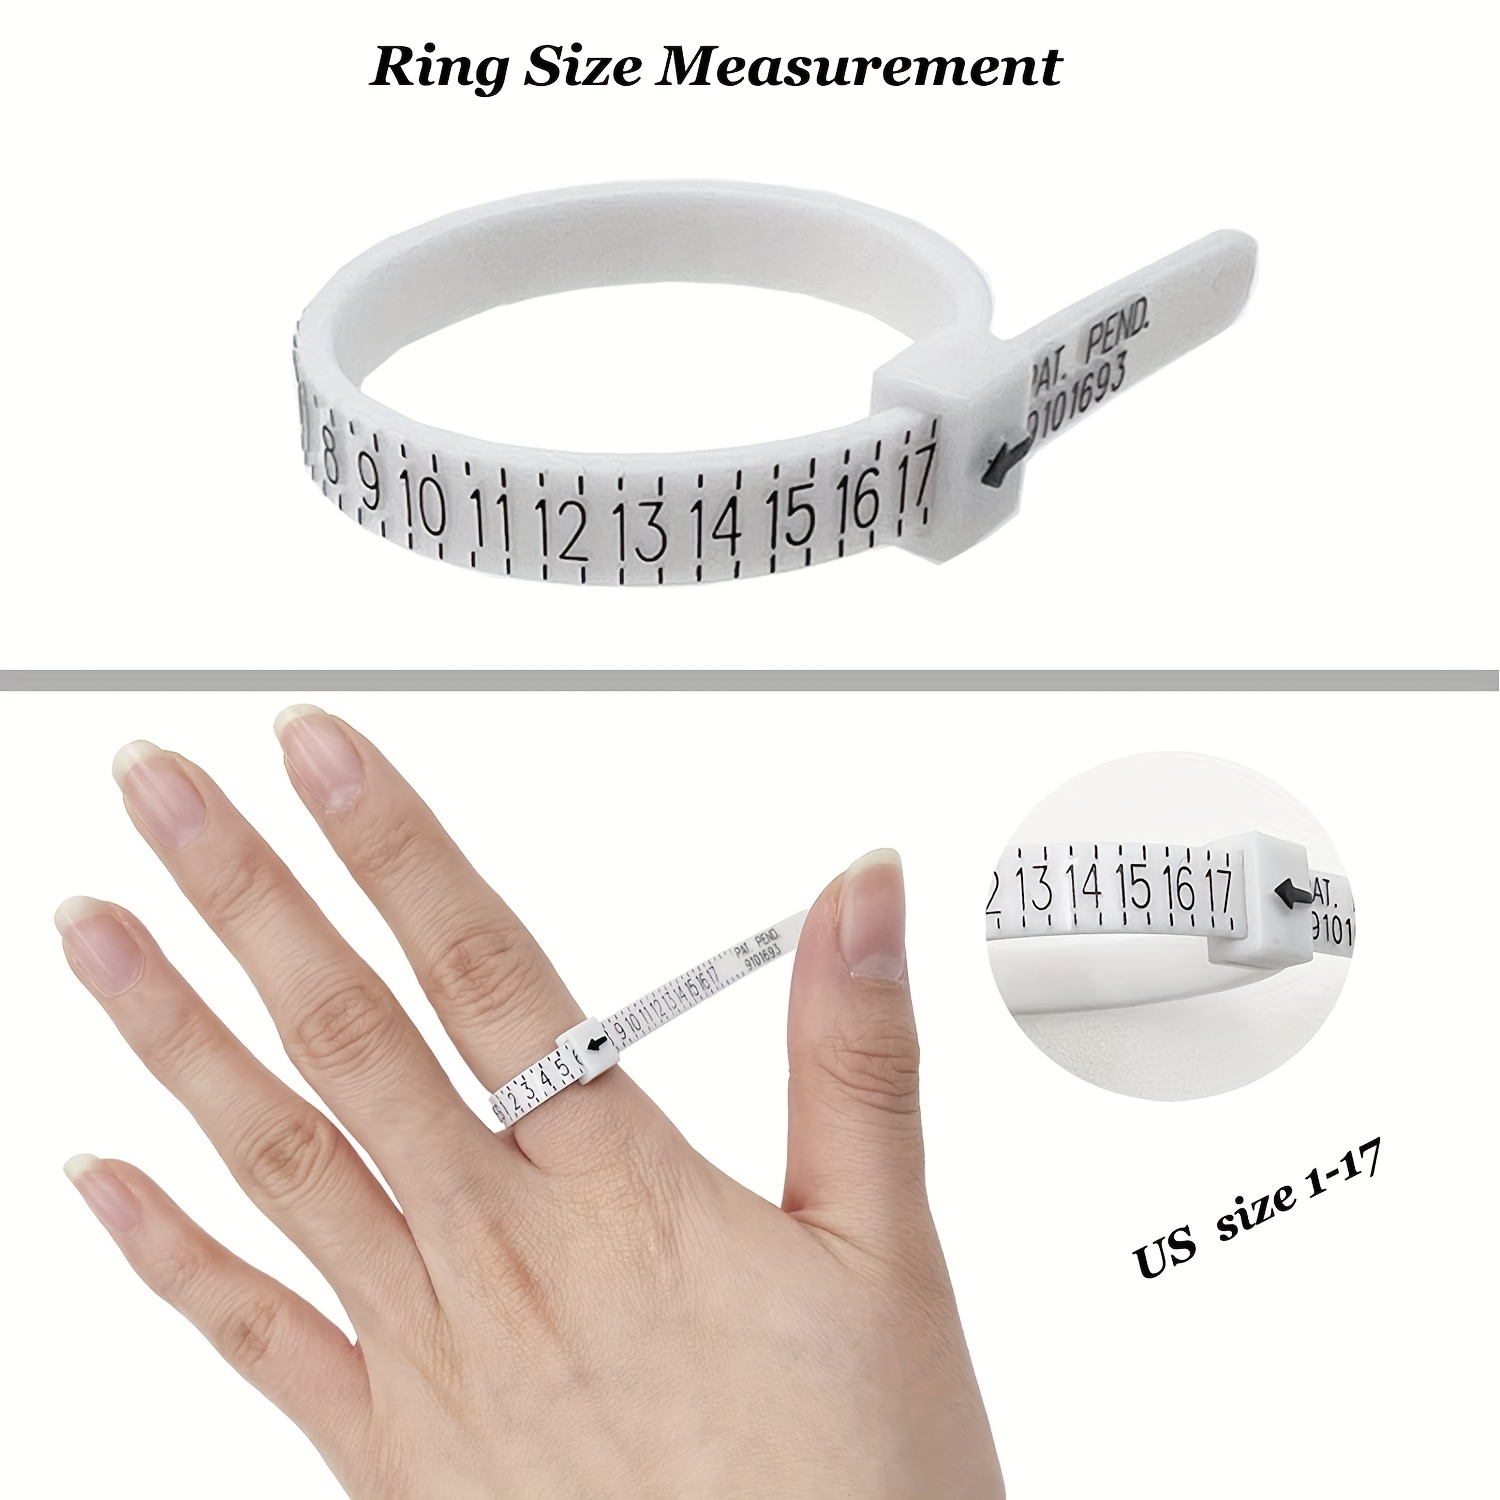 Ring Sizer Measuring Tool Round Ring Mandrel Ring Size - Temu